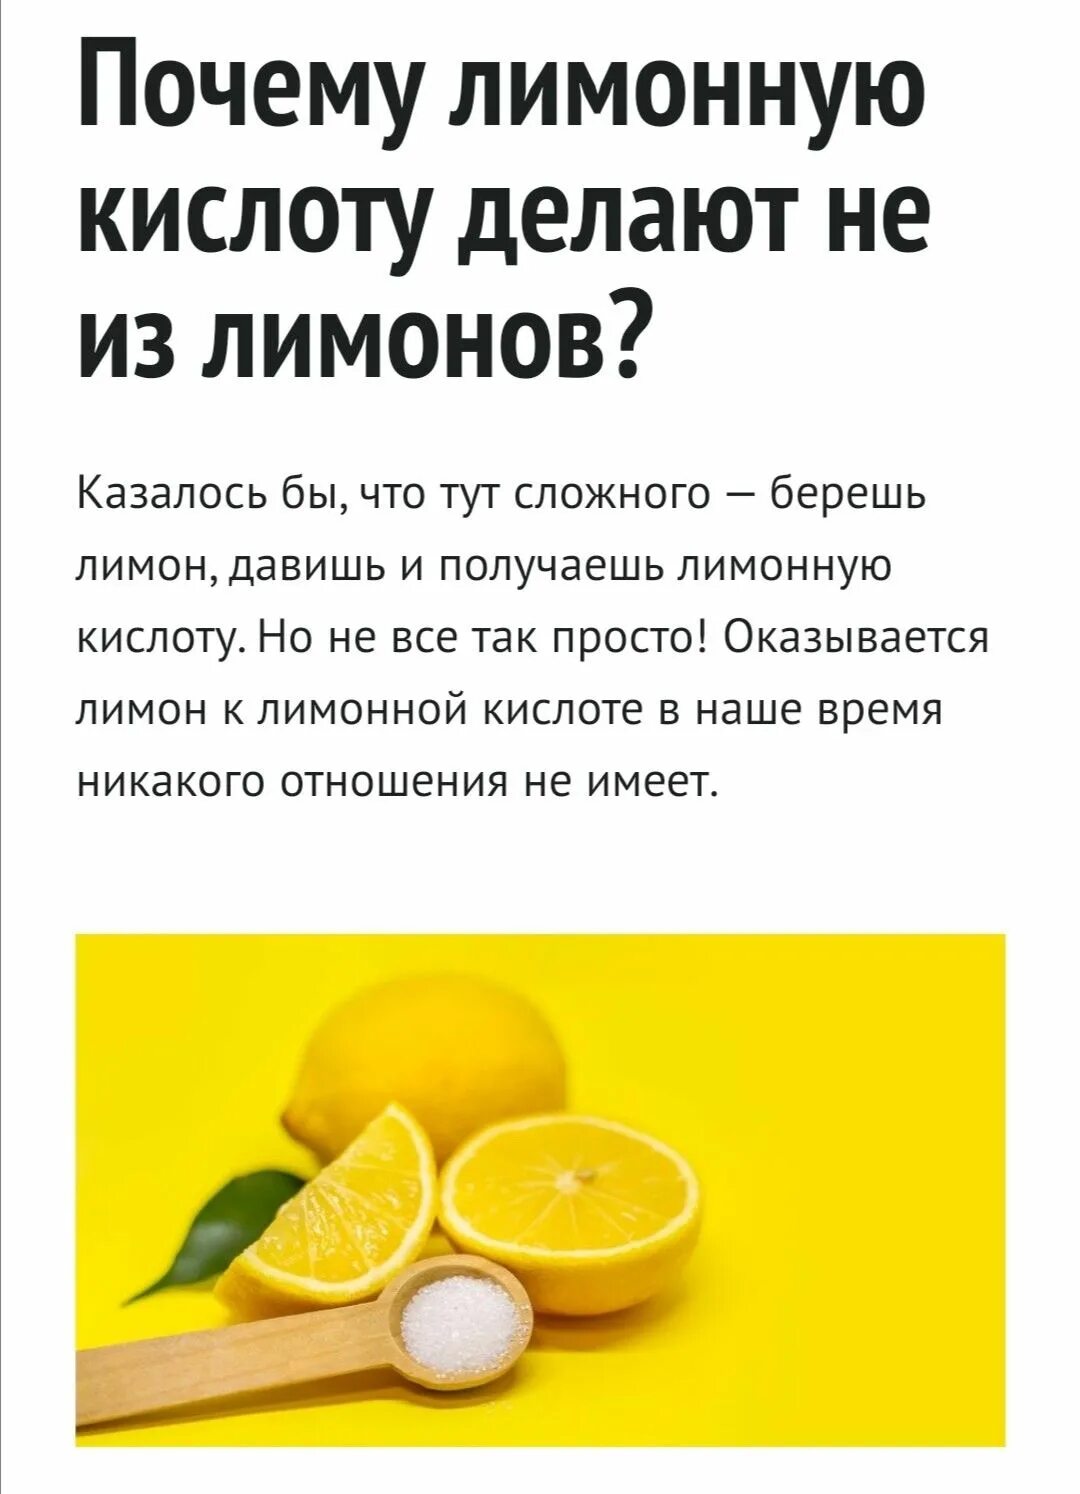 Можно ли лимонной. Как делают лимонную кислоту. Как делают лимонную ктслот. Из чего делают лимонную кислоту. Сок лимона и лимонная кислота.